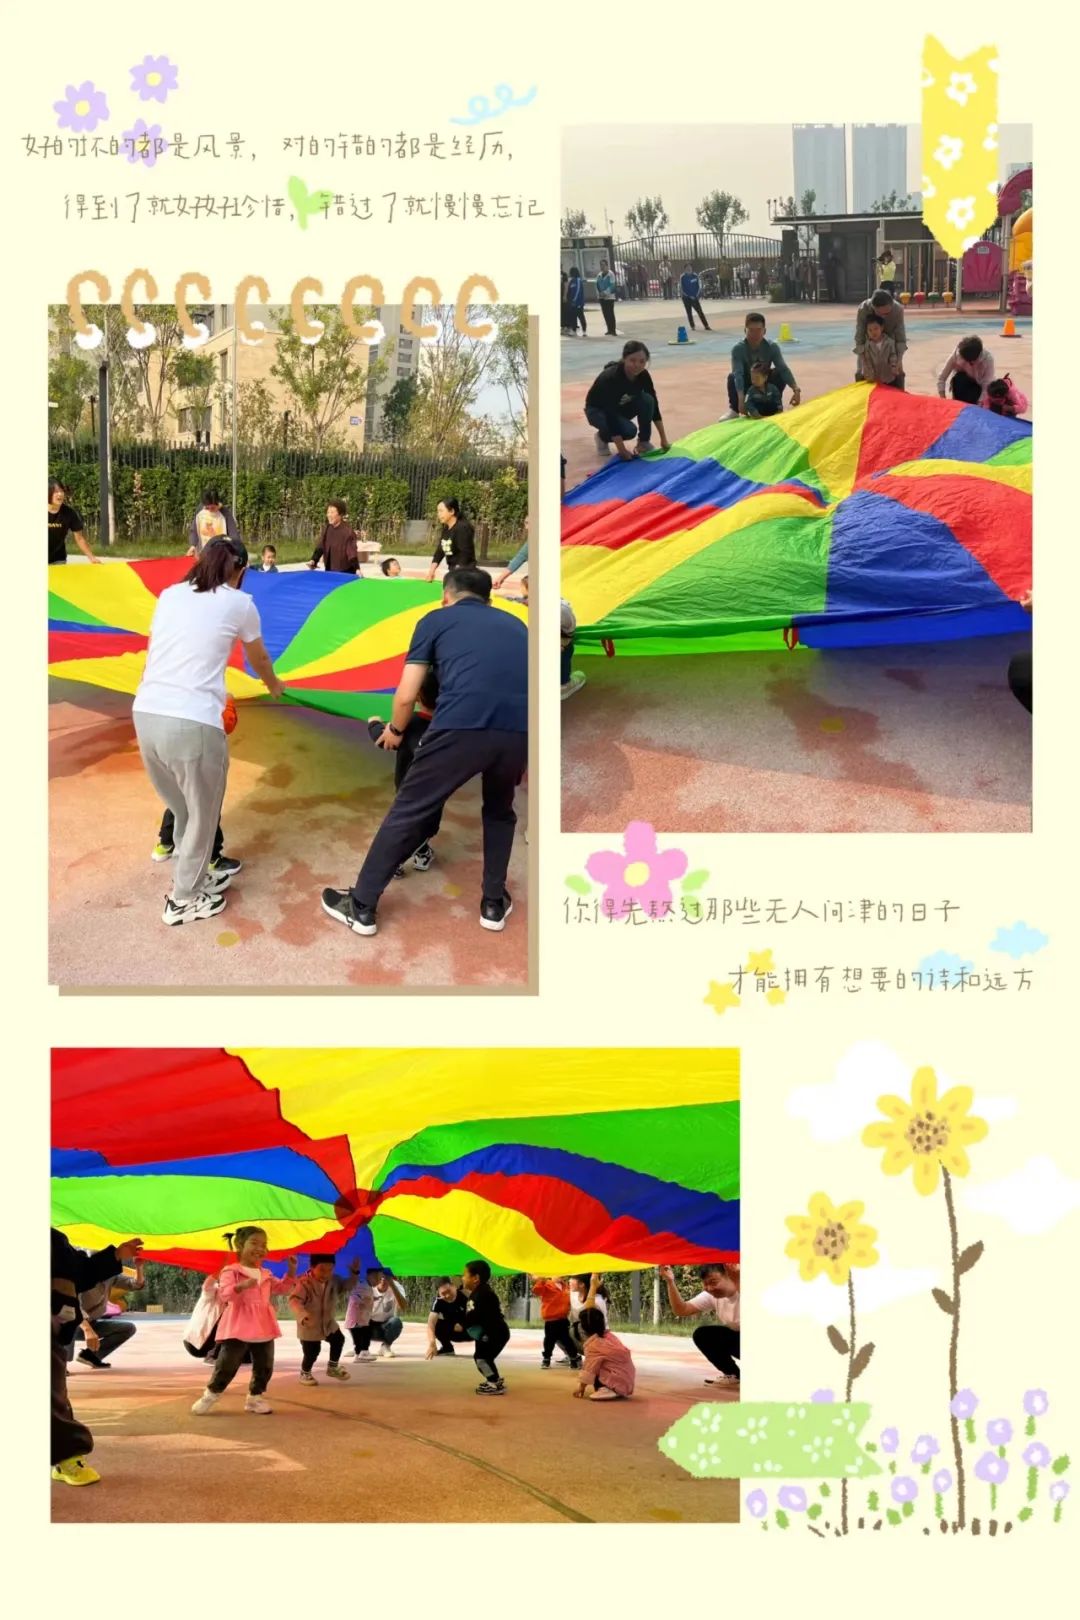 亲子活动好玩的彩虹伞_彩虹伞的玩法亲子游戏_亲子伞彩虹玩法游戏视频